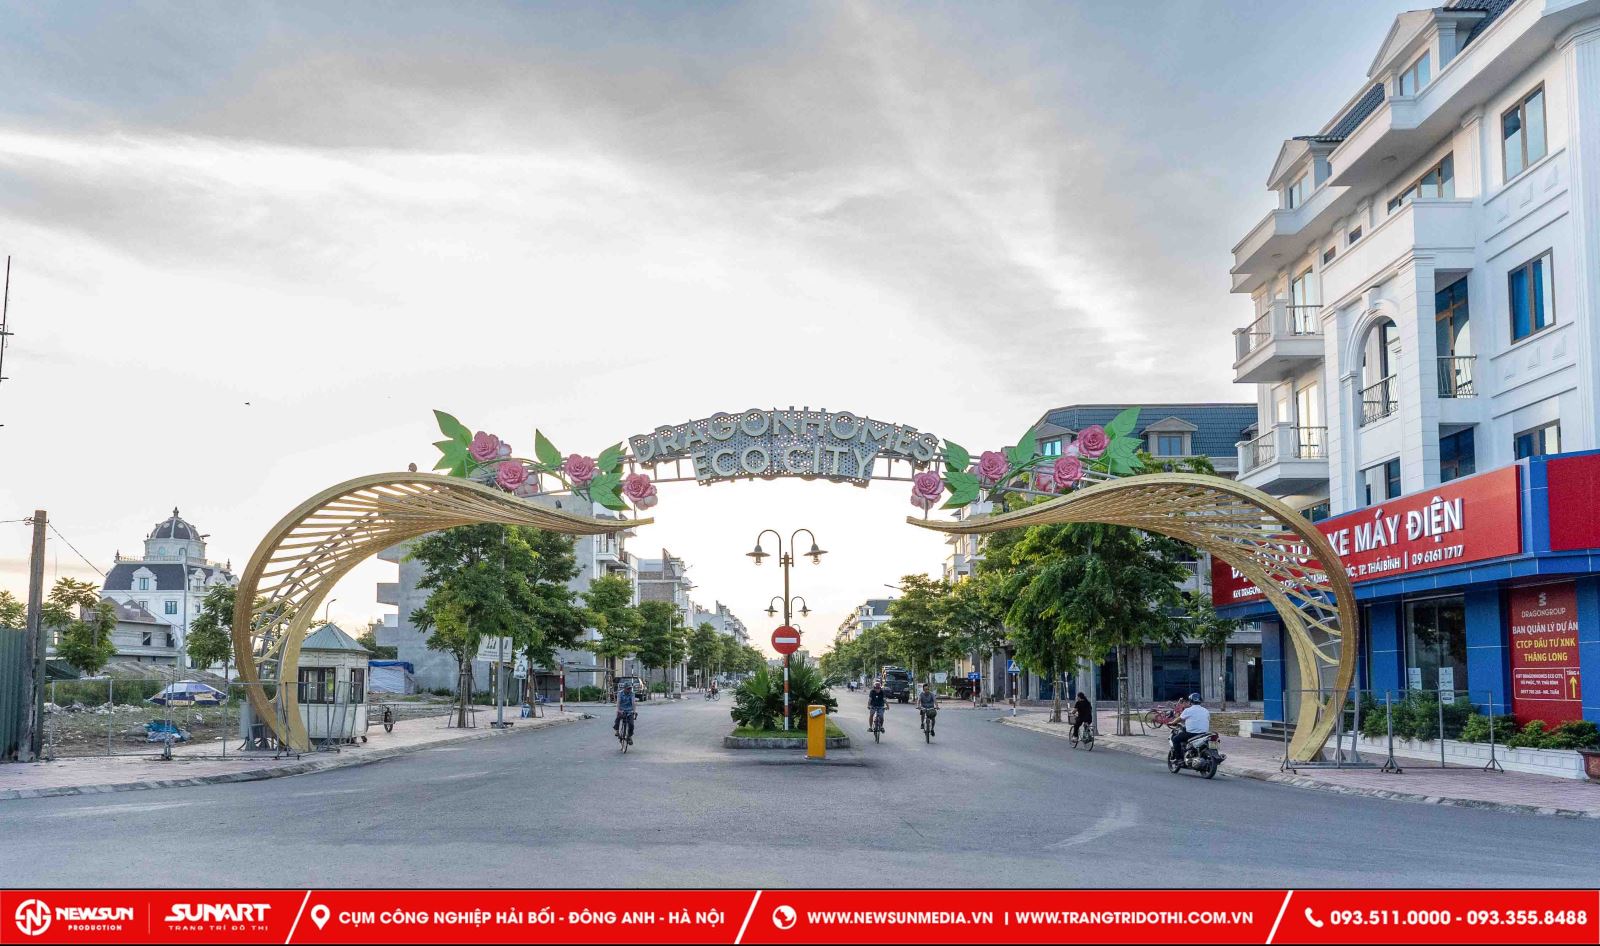 Sunart đơn vị cung cấp dịch vụ thiết kế trang trí cổng chào tại Phú Thọ